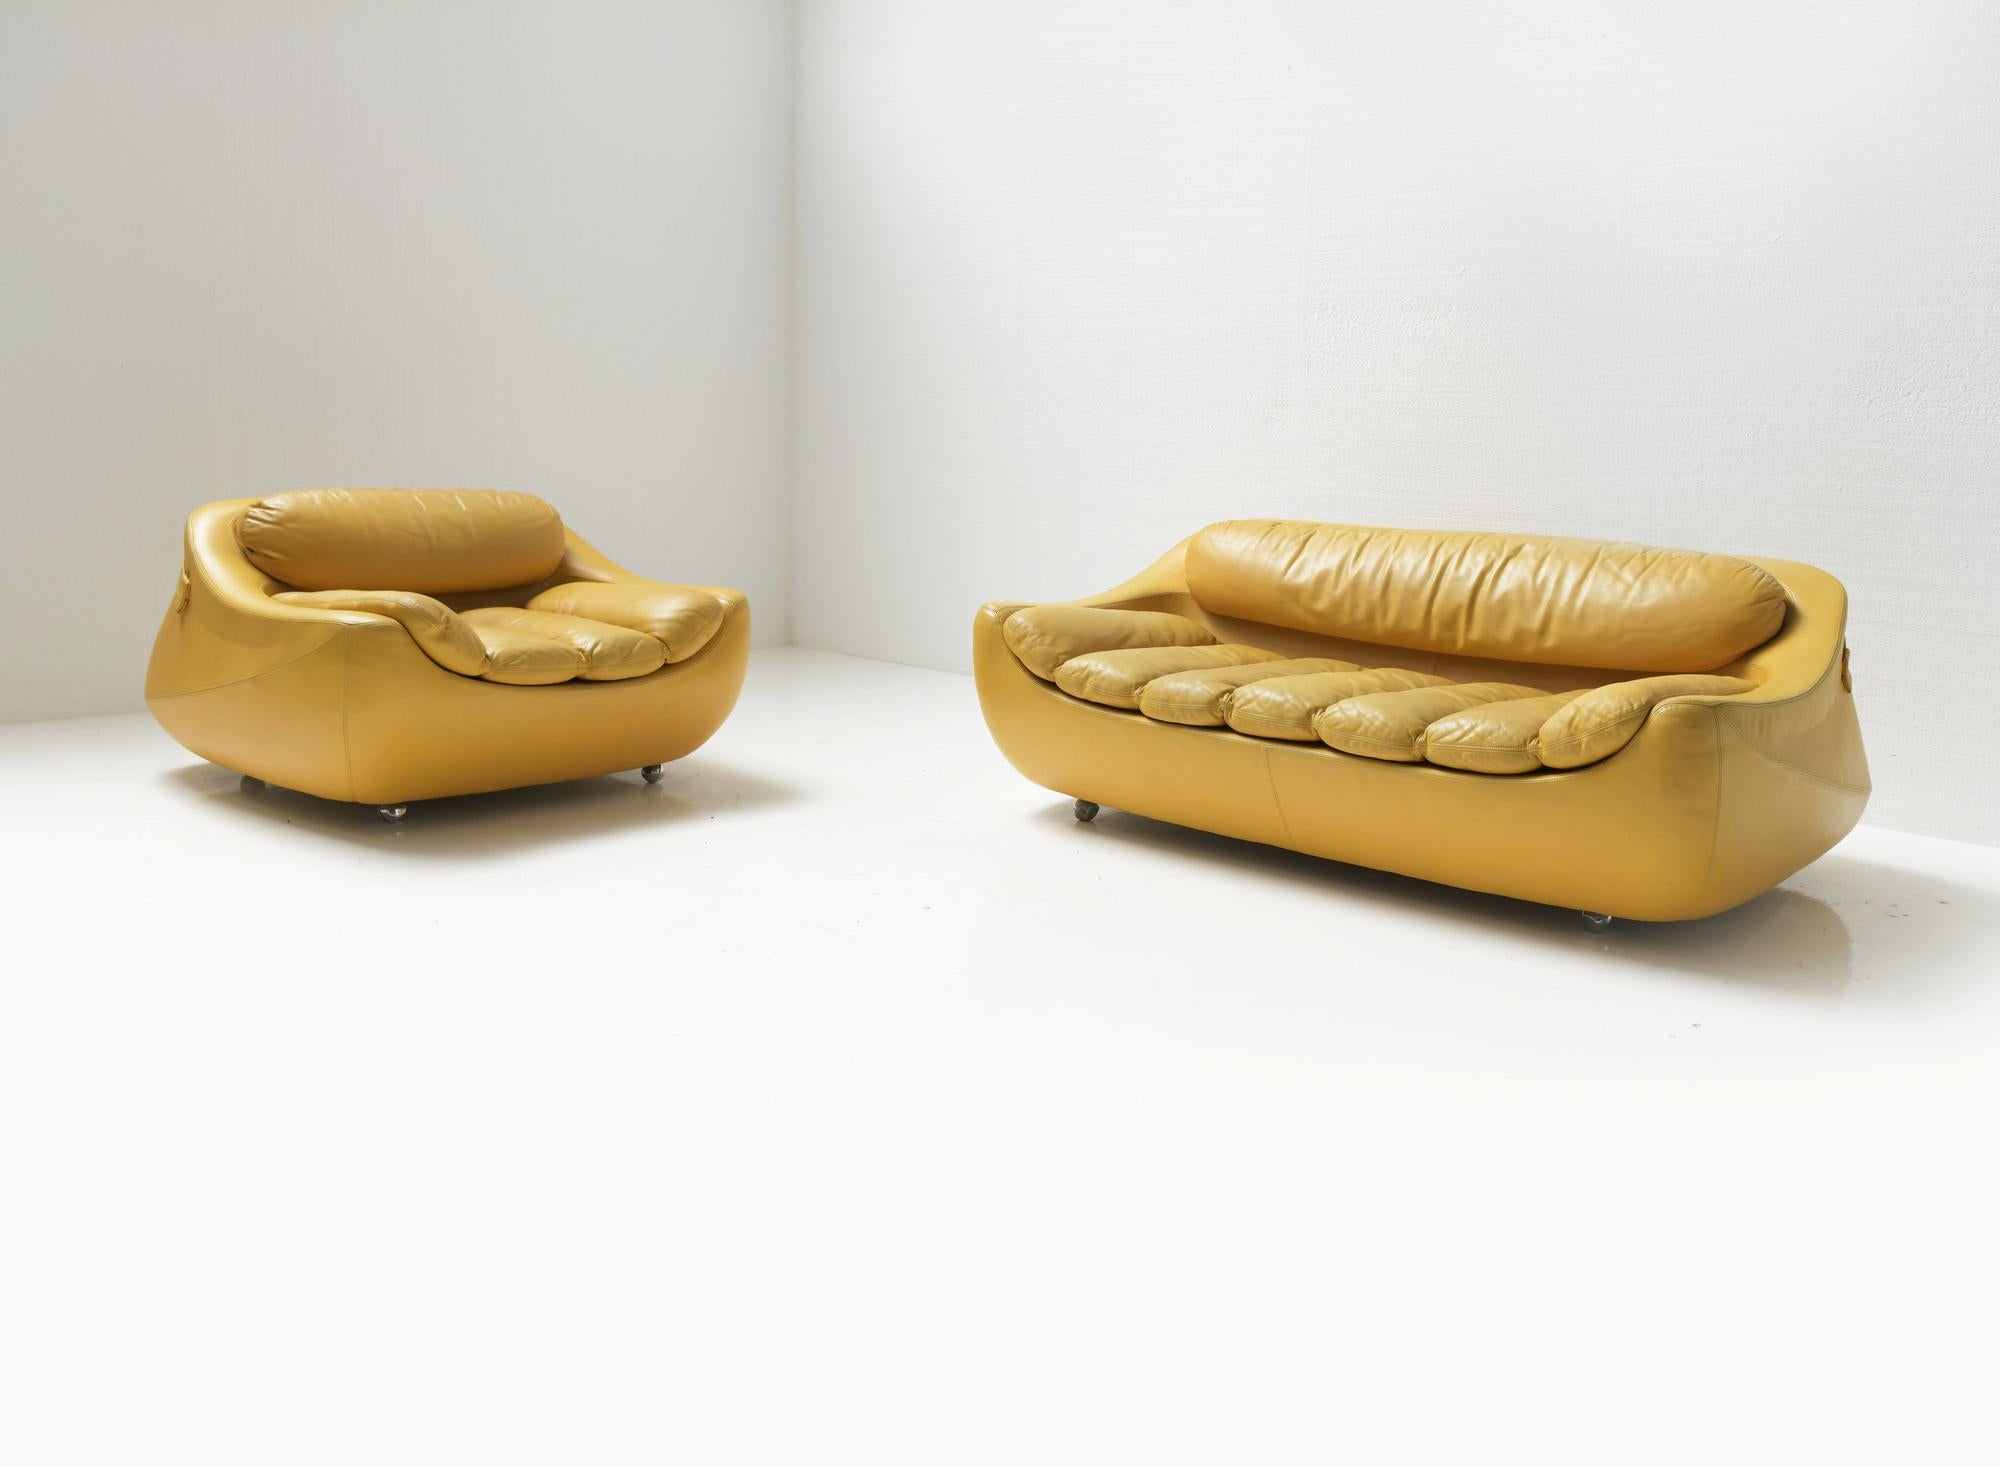 Außergewöhnlich seltenes 'Carrera' Loungeset.
Entworfen von Gionathan de Pas, Donato D'Urbino & Paolo Lomazzi und hergestellt von BBB Bonancina, Italien 1969

Wunderschön geformte niedrige Sofas. Noch in ihrem ursprünglichen gelben